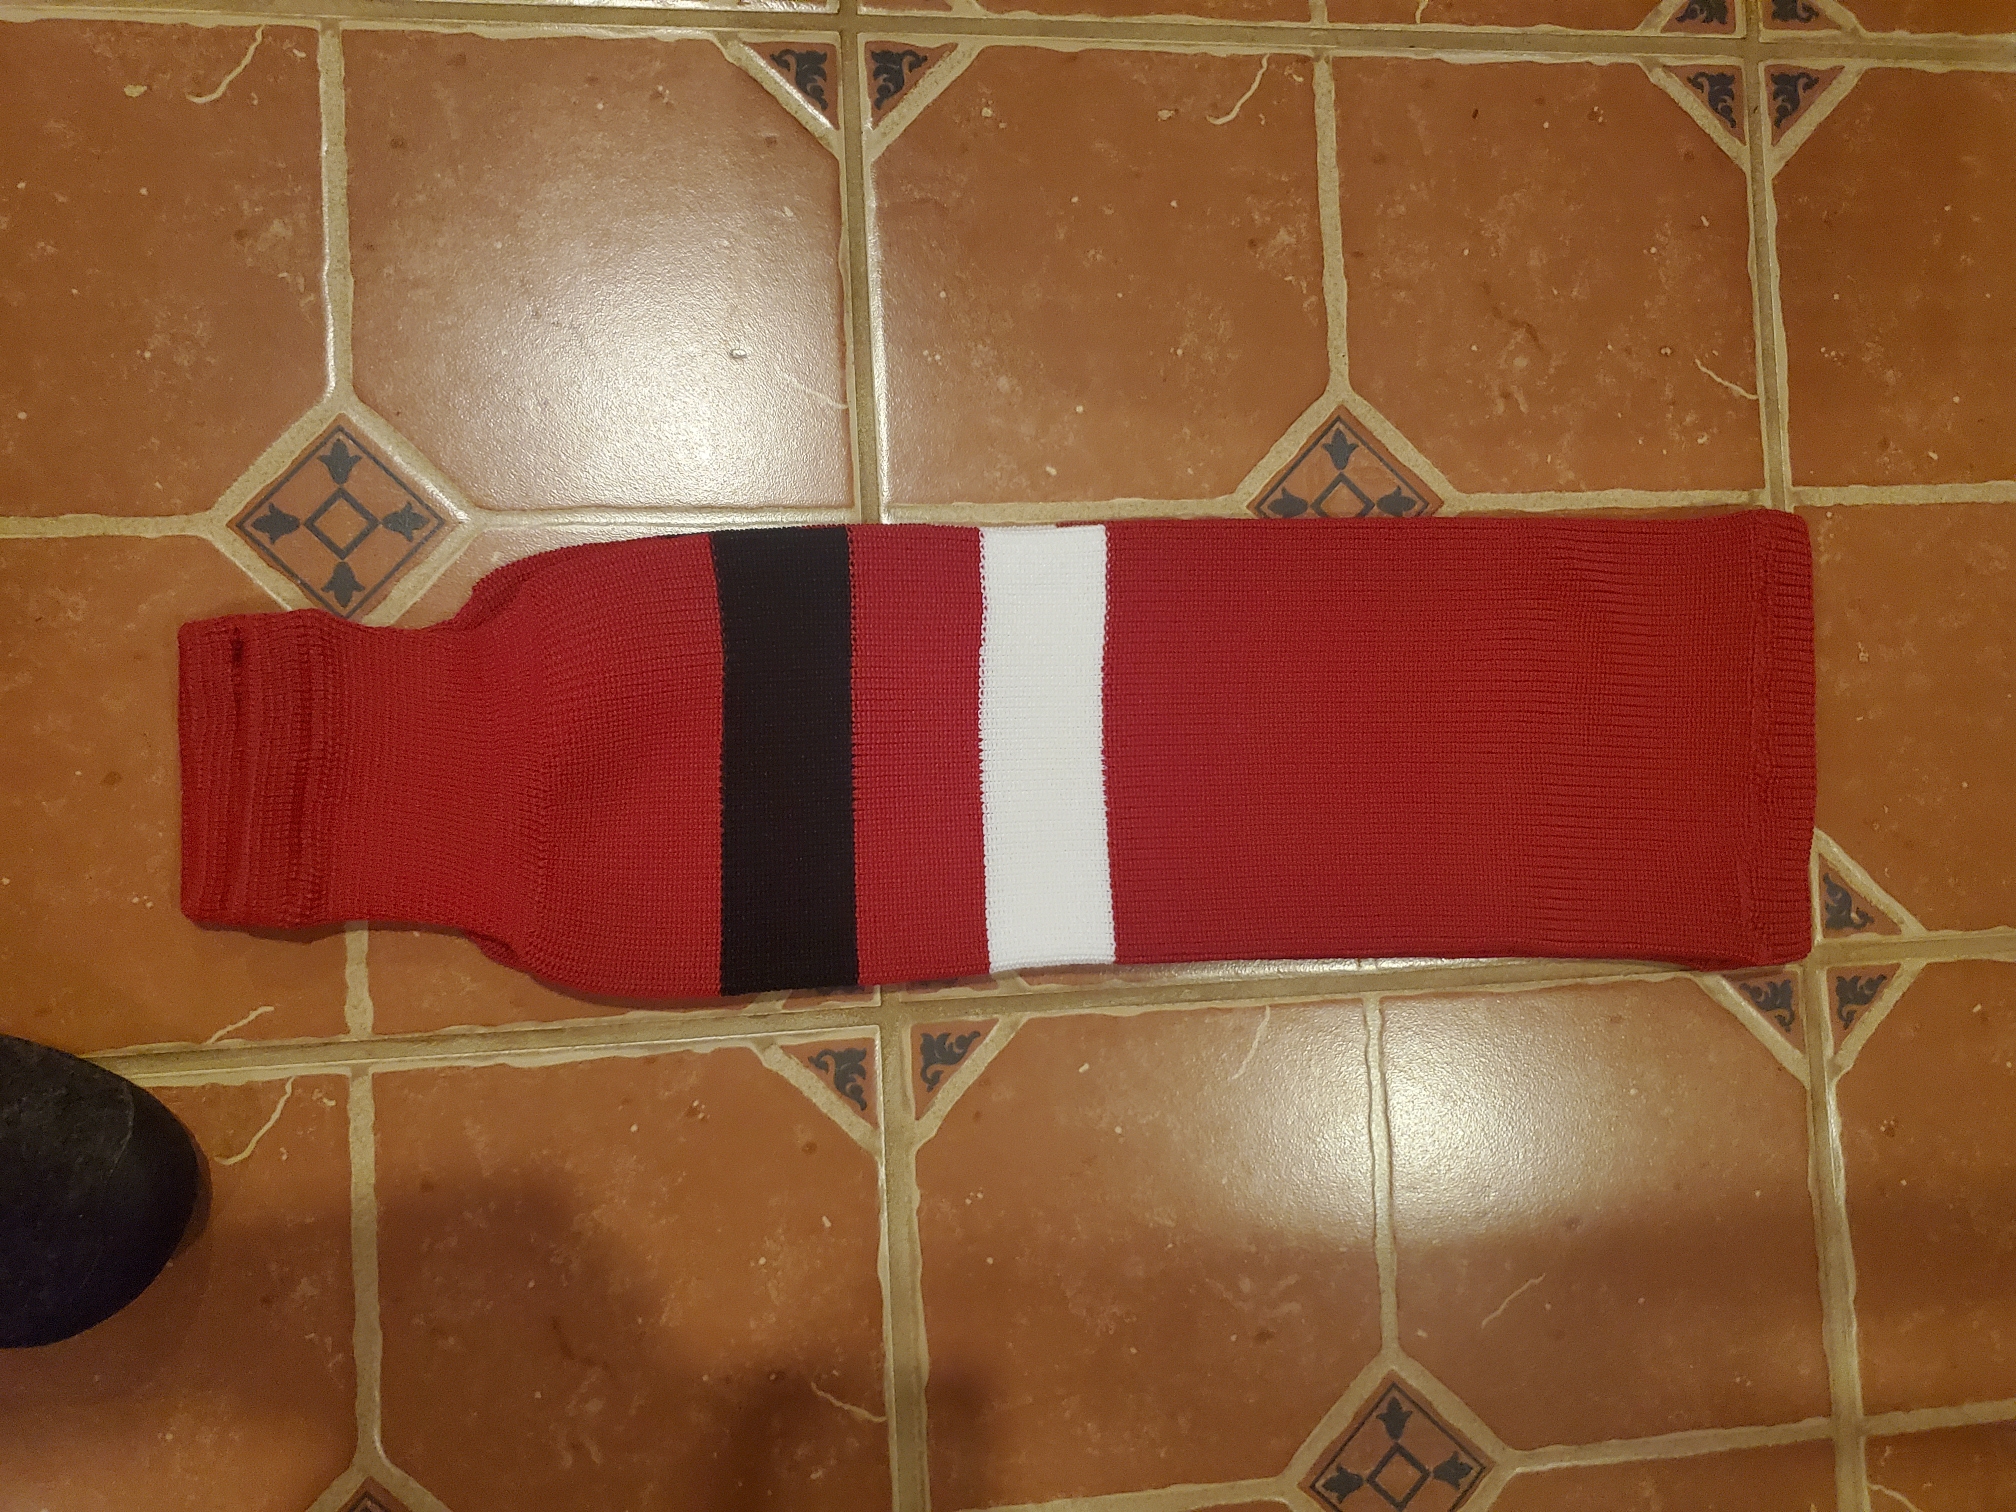 Red Intermediate New Knit Socks